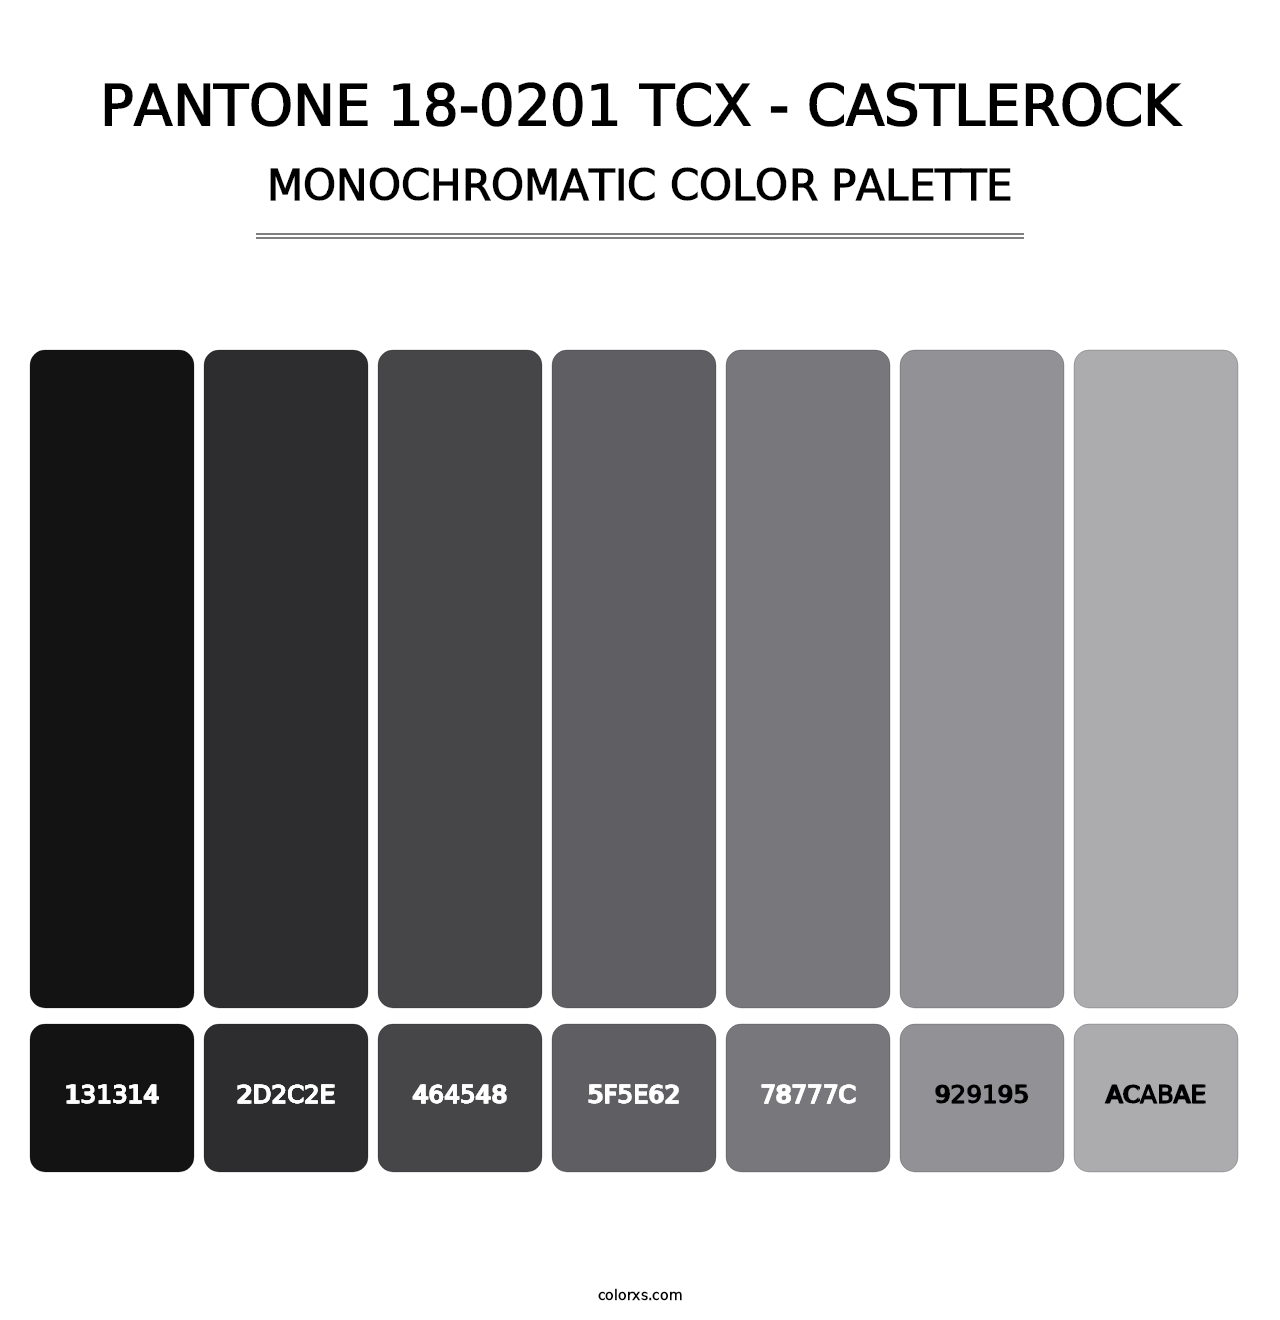 PANTONE 18-0201 TCX - Castlerock - Monochromatic Color Palette